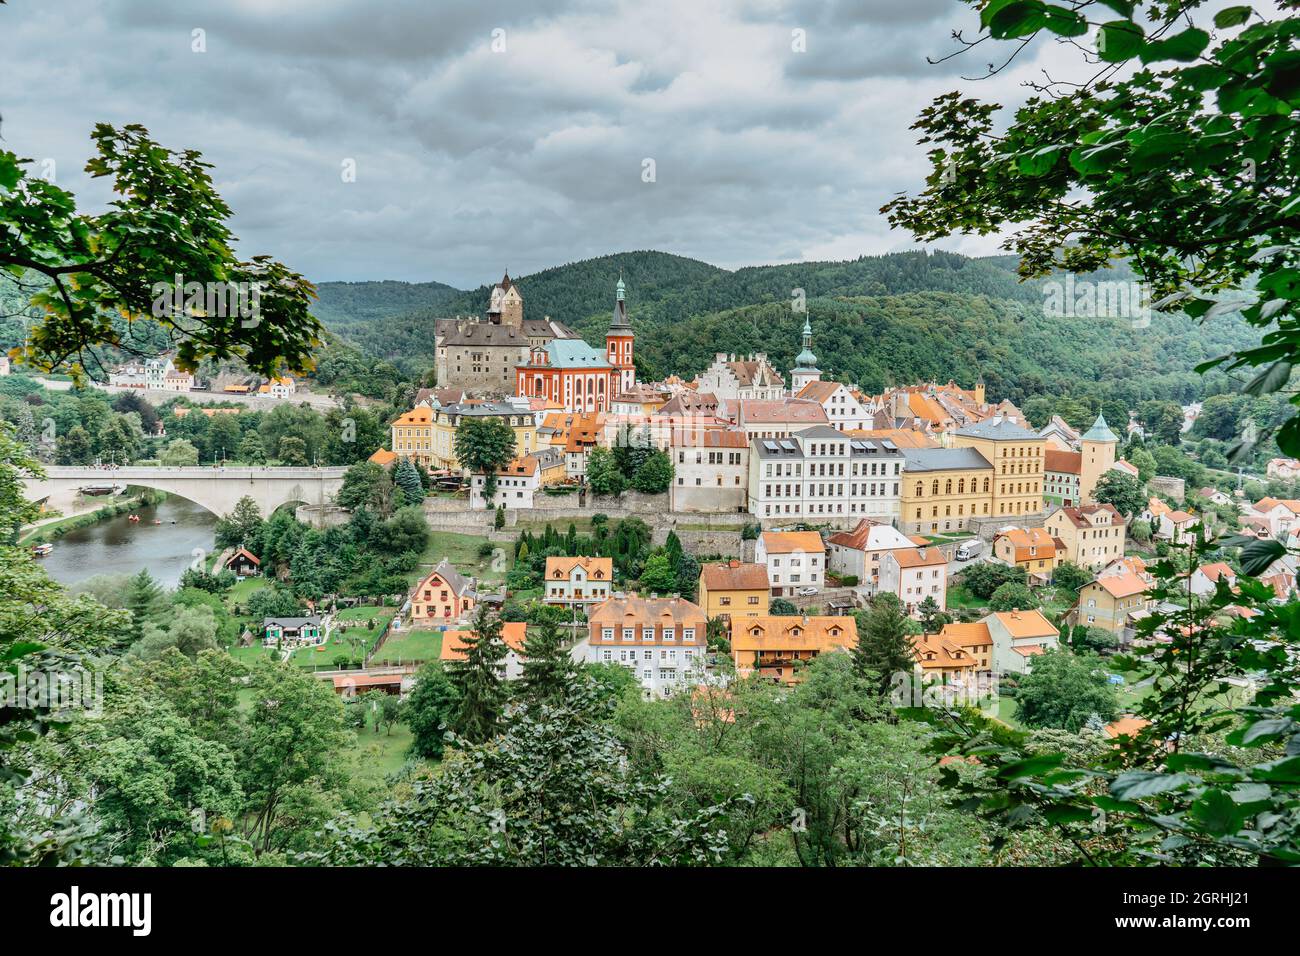 Panoramablick auf die berühmte mittelalterliche Stadt Loket, Elbogen, mit bunten Häusern und Steinburg über dem Fluss, Tschechische Republik Stockfoto